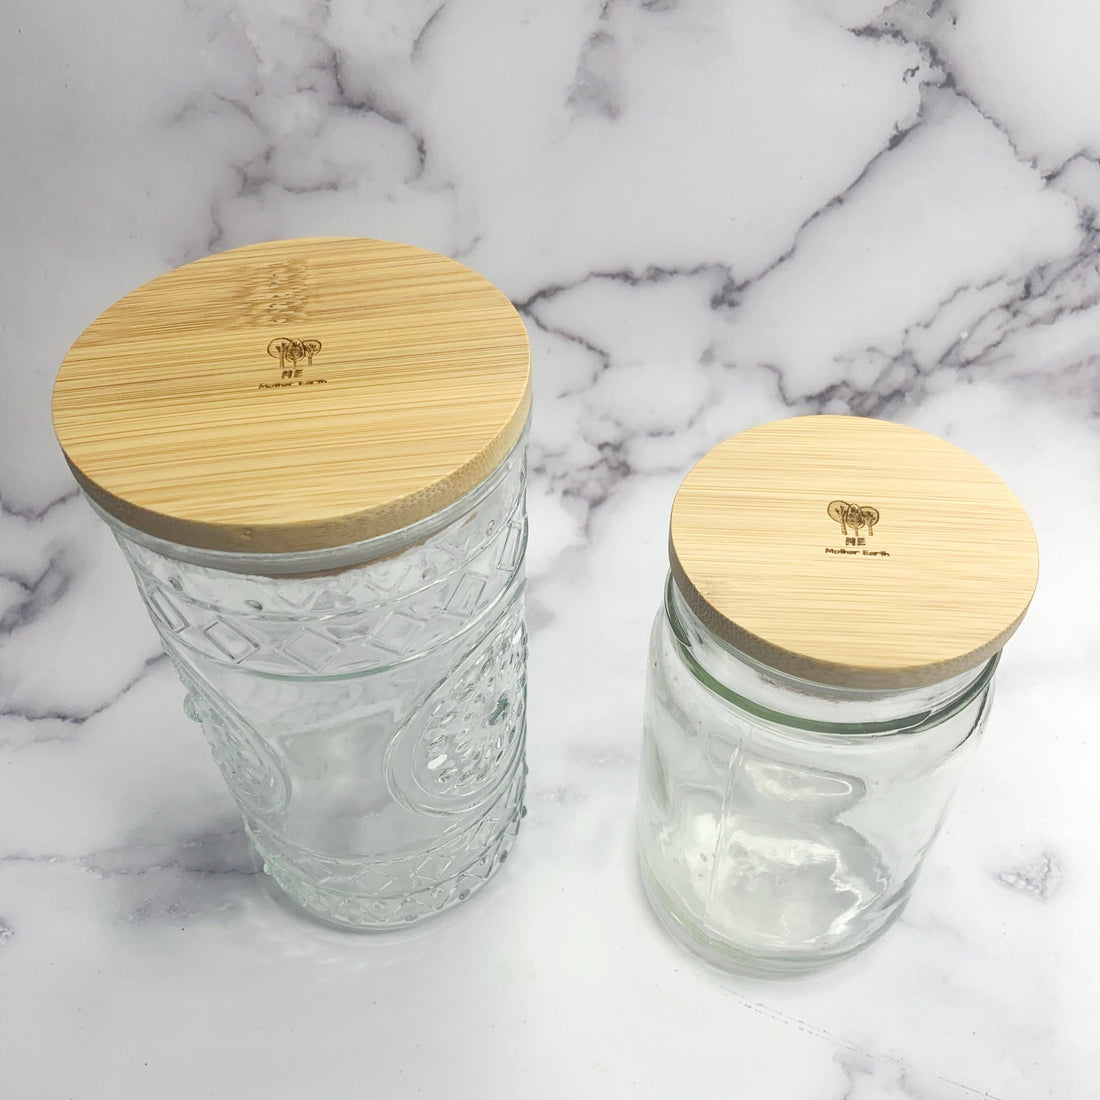 ME Mother Earth Standard Jar Lid on Glass Jar on Right, Shown with Wide Jar Lid on Glass Jar on Left for Size Comparison. 